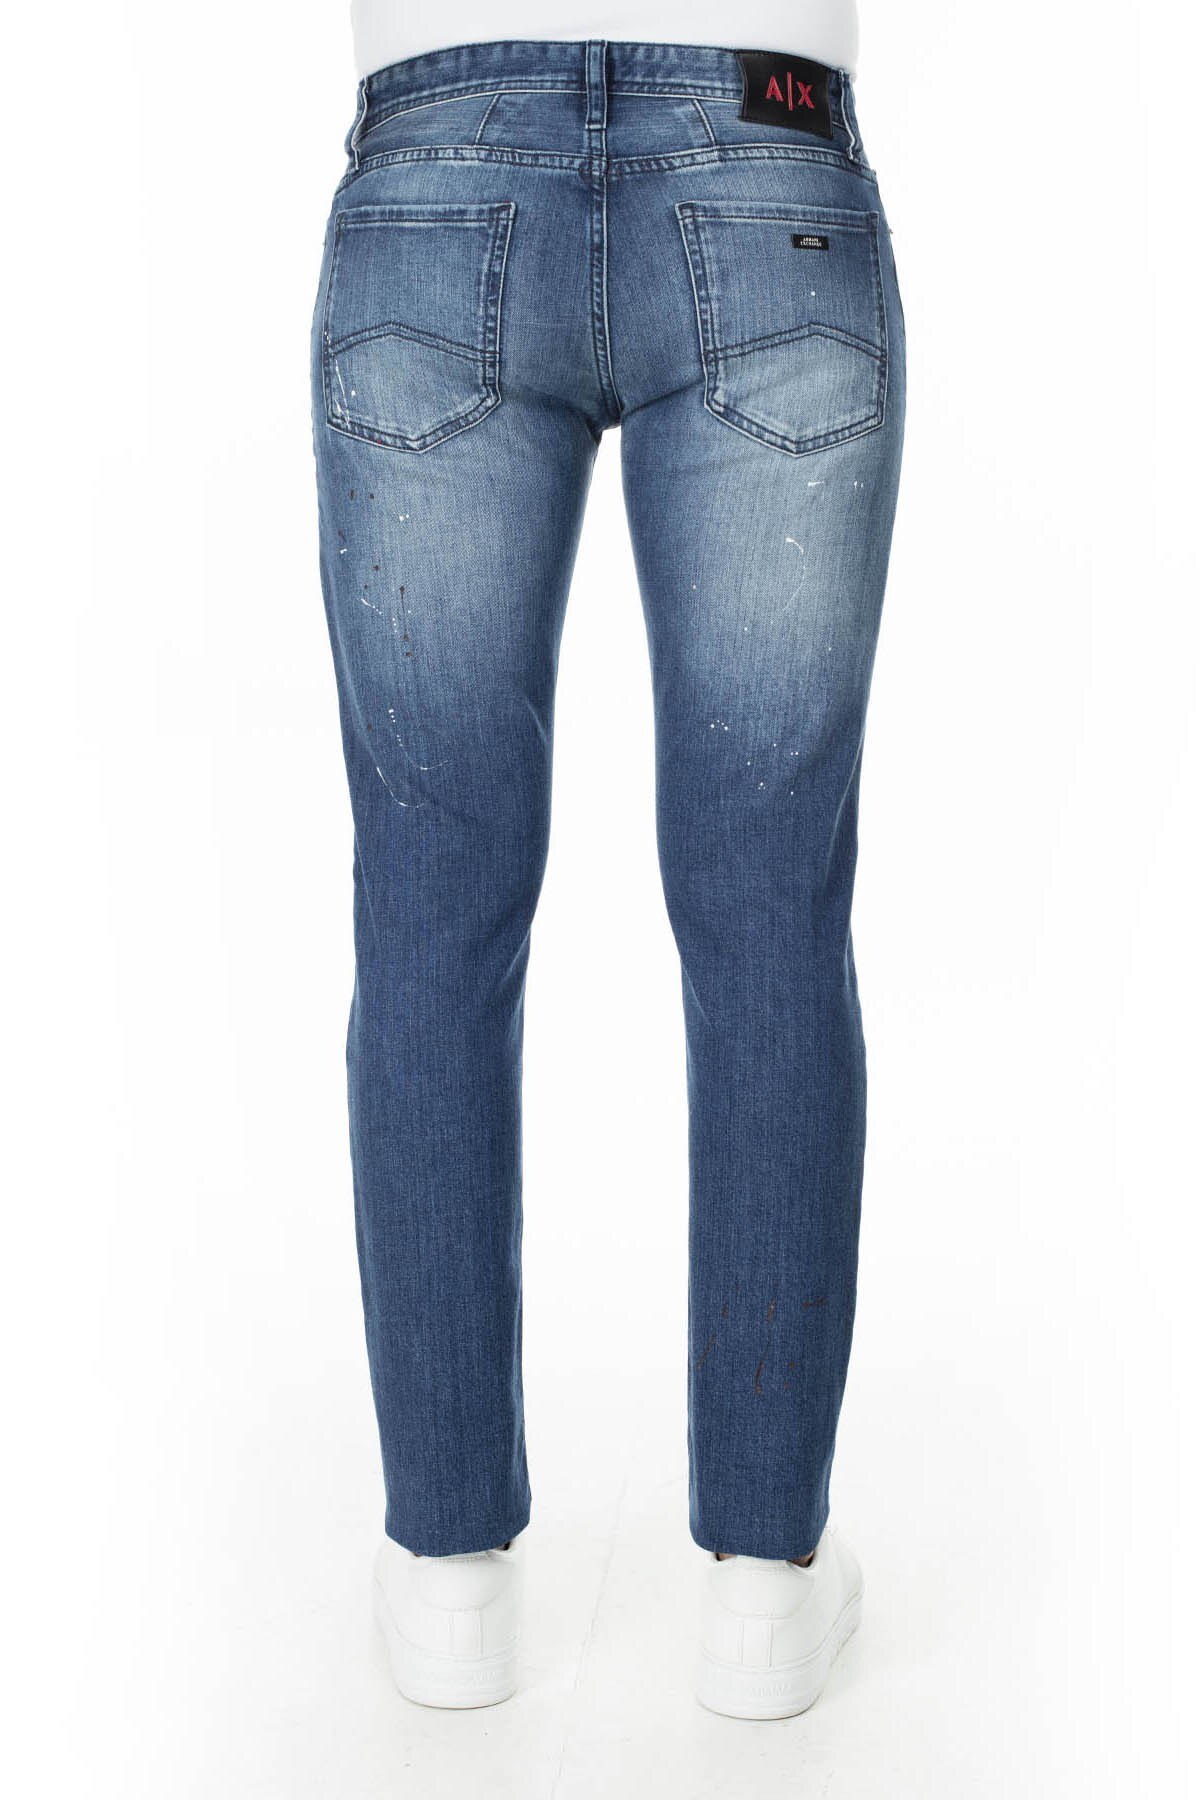 Armani Exchange J14 Jeans Erkek Kot Pantolon 3HZJ14 Z4ZCZ 1500 KOYU MAVİ